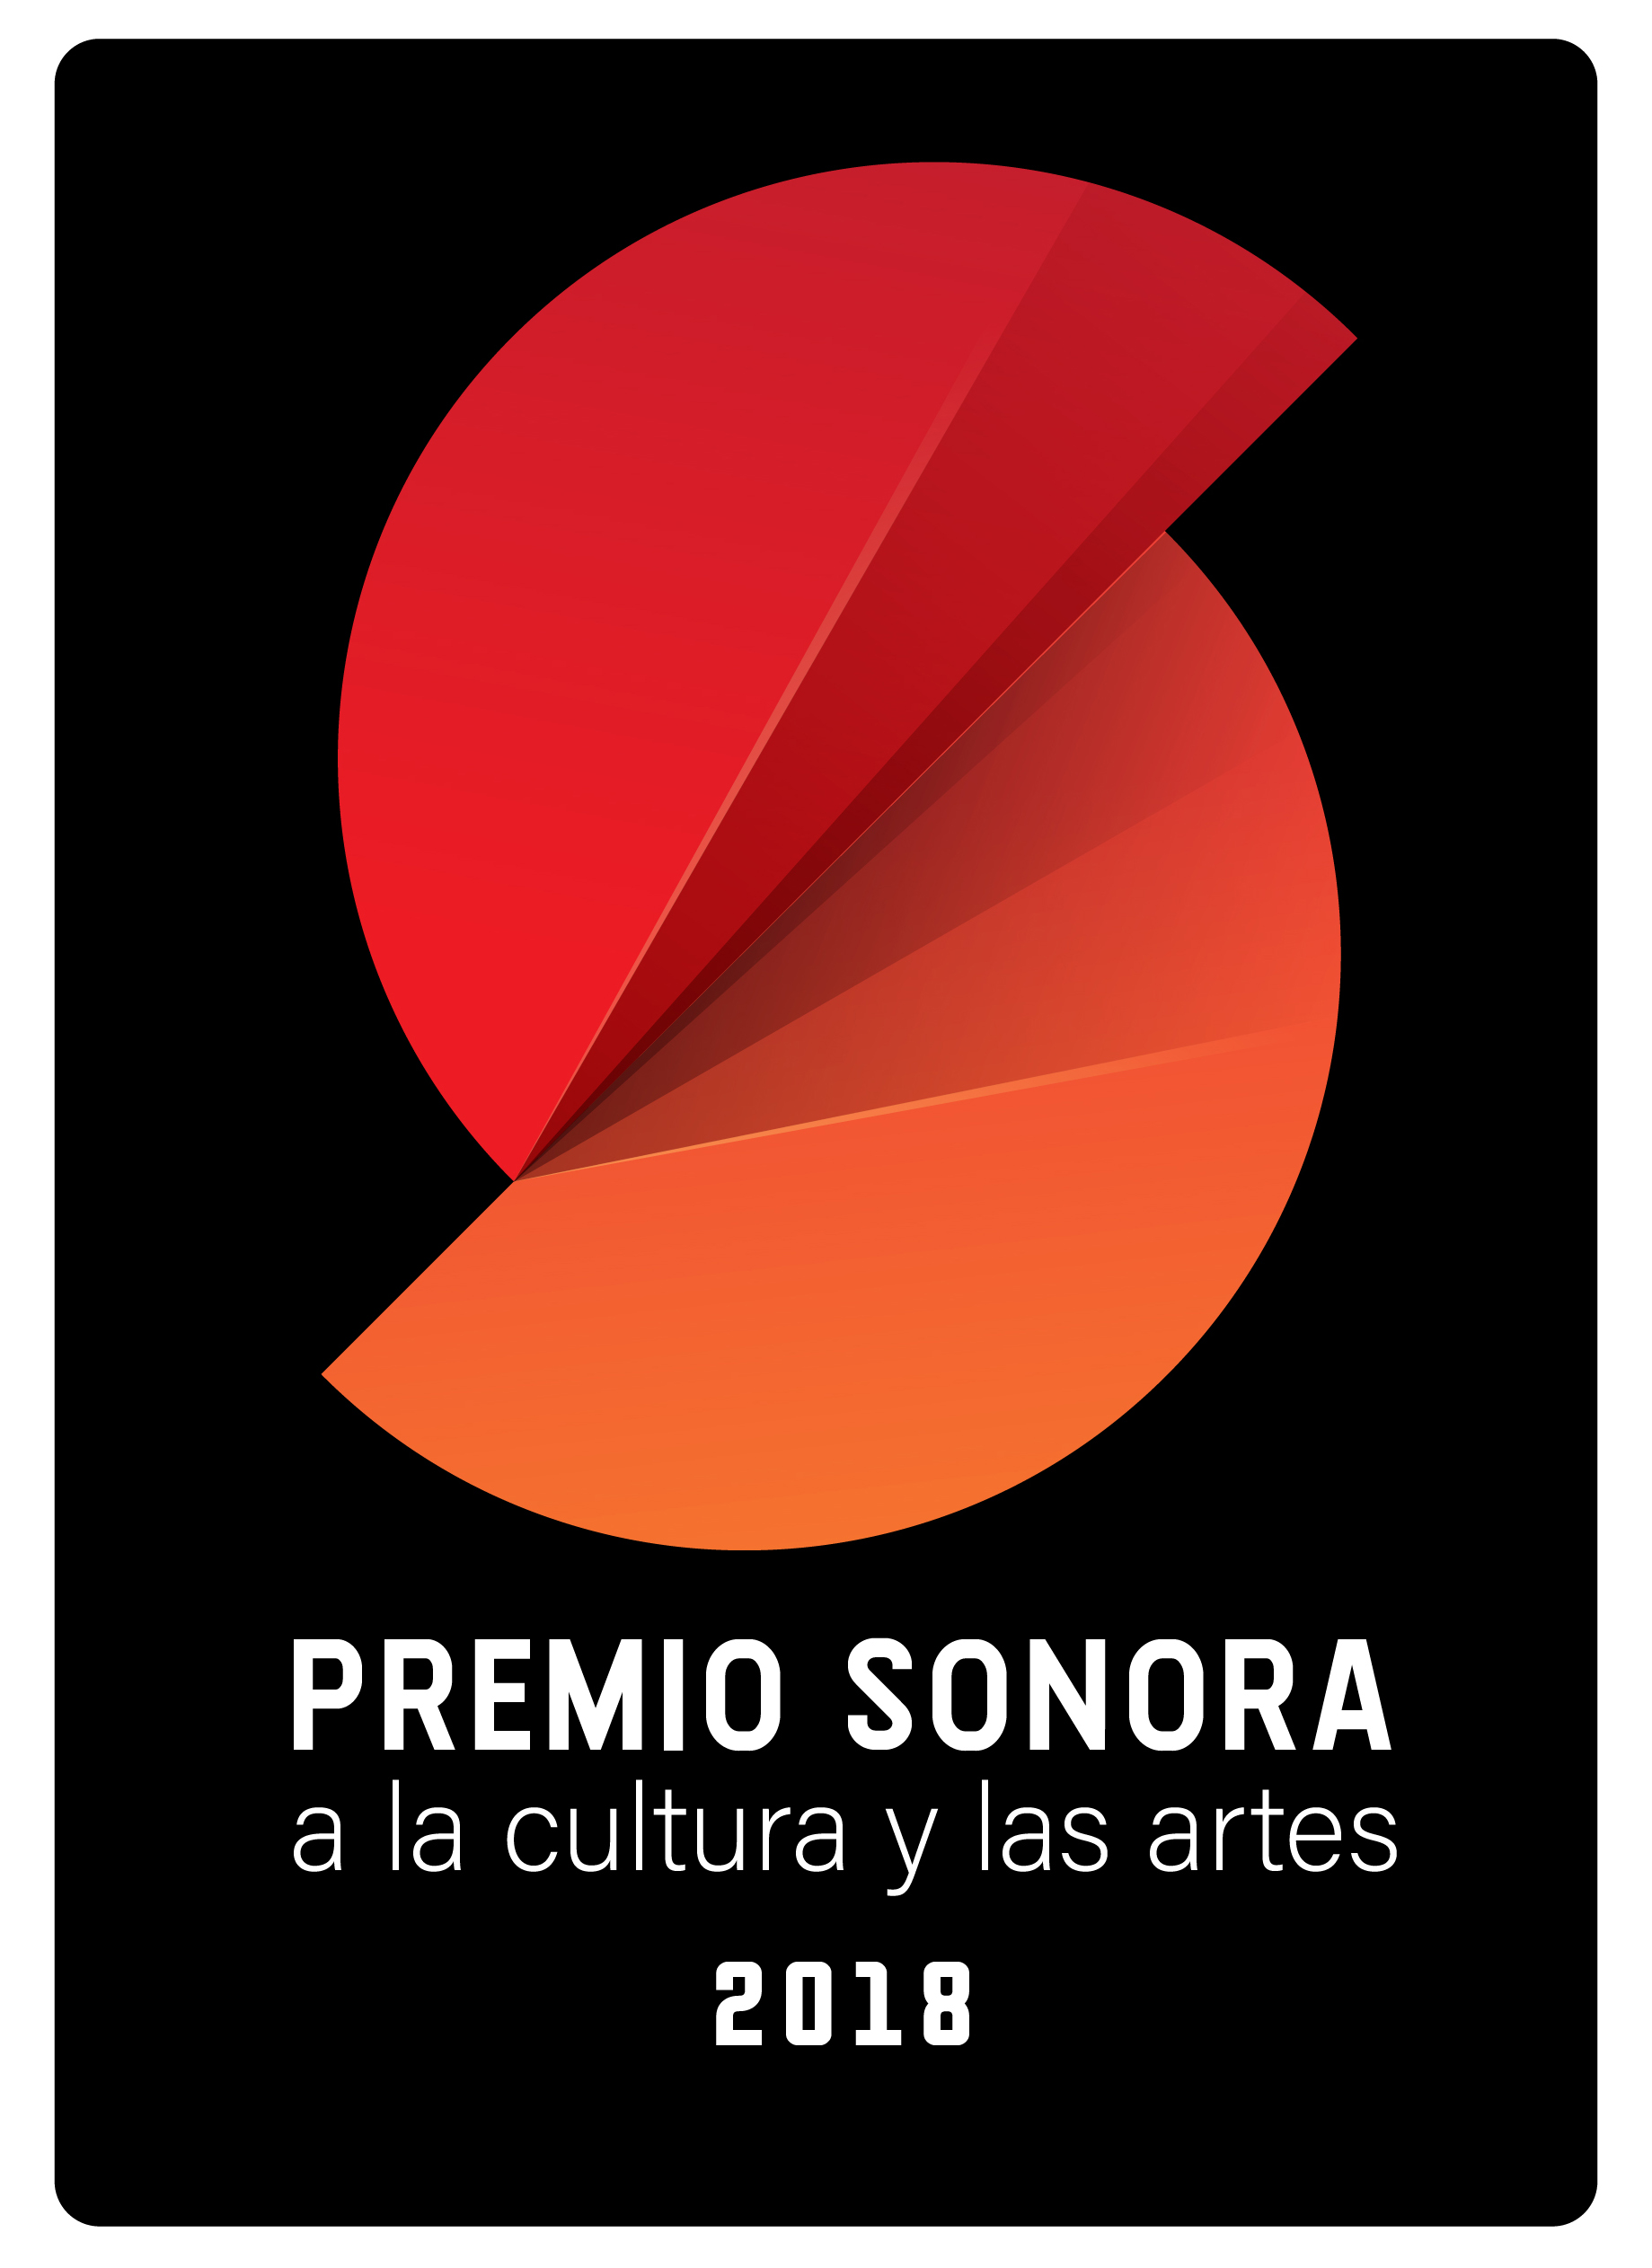 PREMIO SONORA 2018 [Recovered]